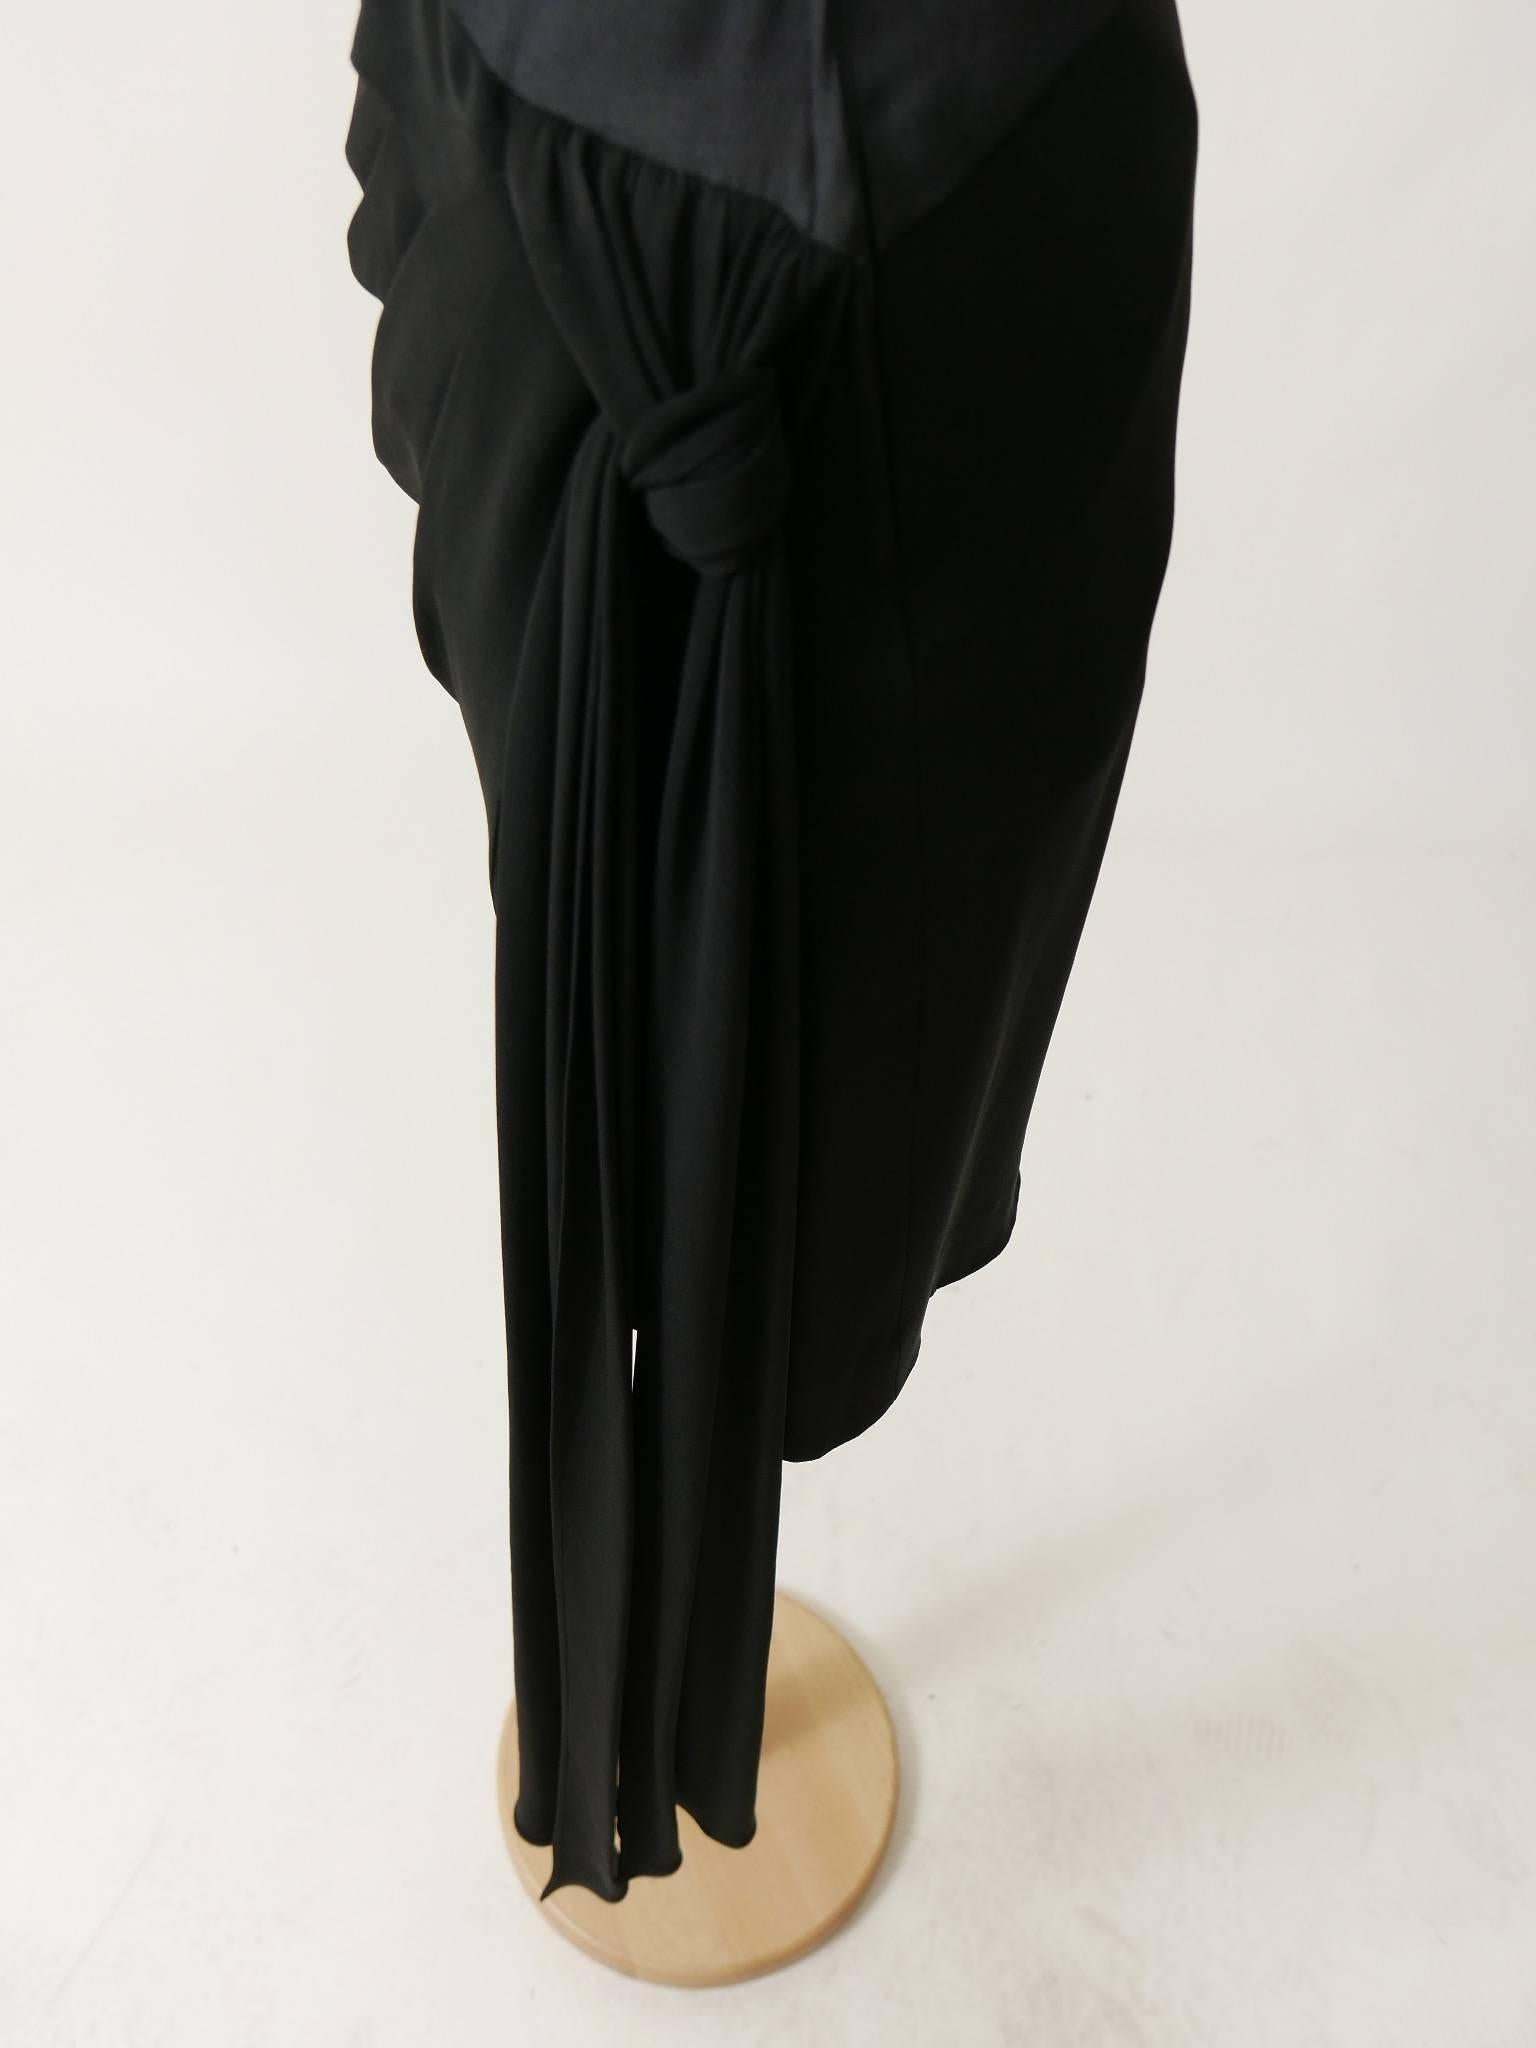 1980s SAINT LAURENT Rive Gauche Black Strapless Cocktail Dress For Sale 3